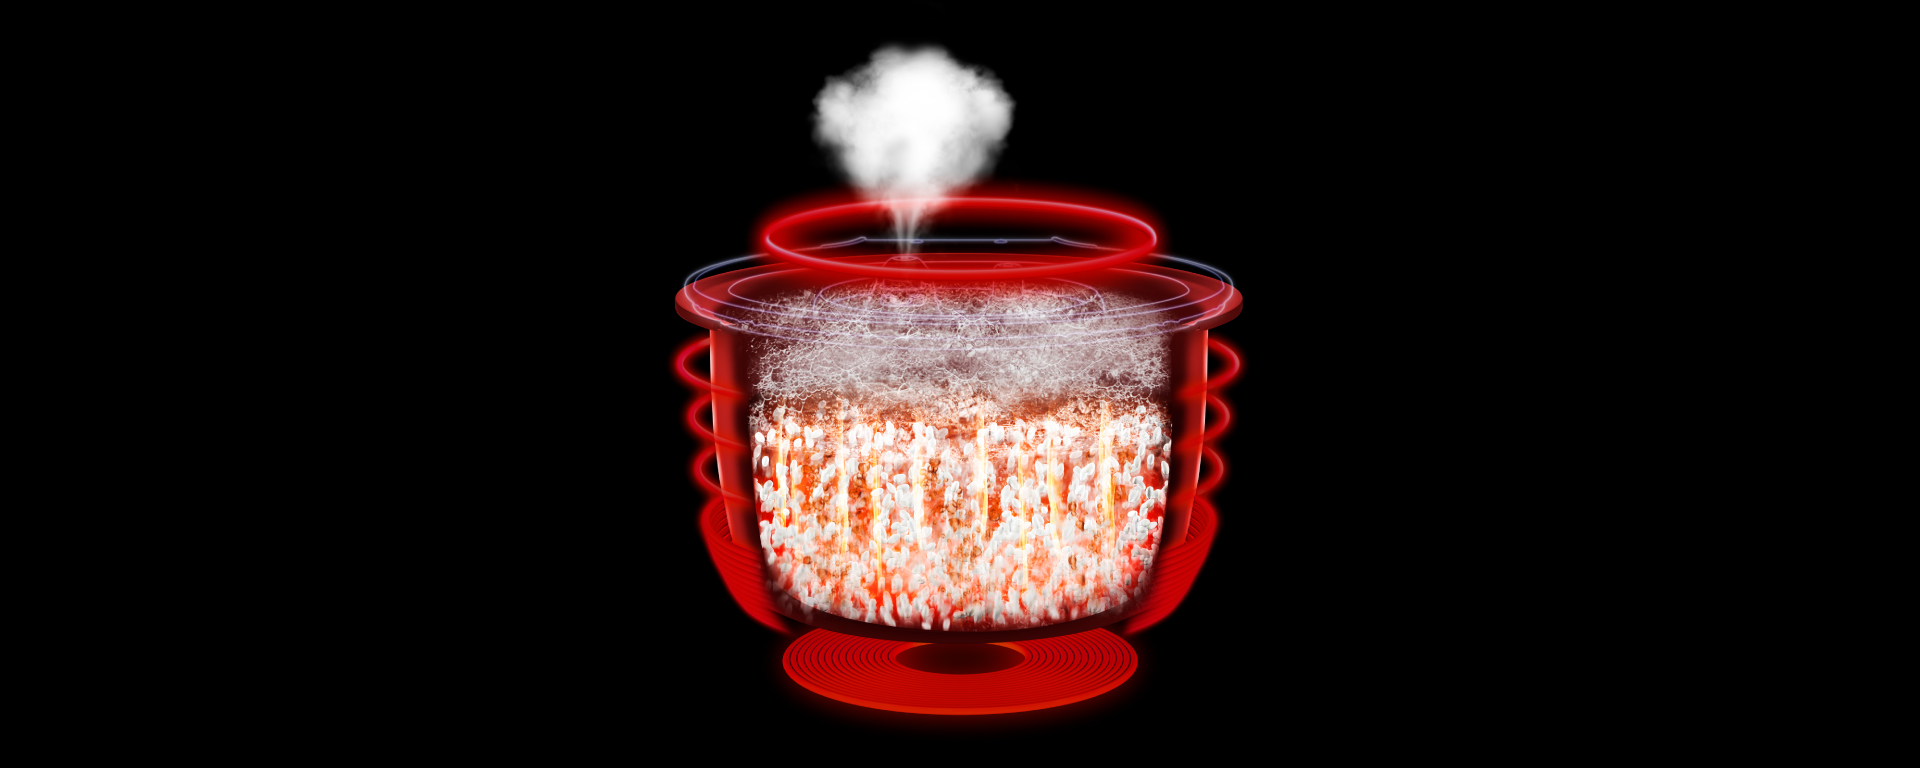 パナソニック炊飯器の火力・圧力技術をイメージしたCGの画像です。